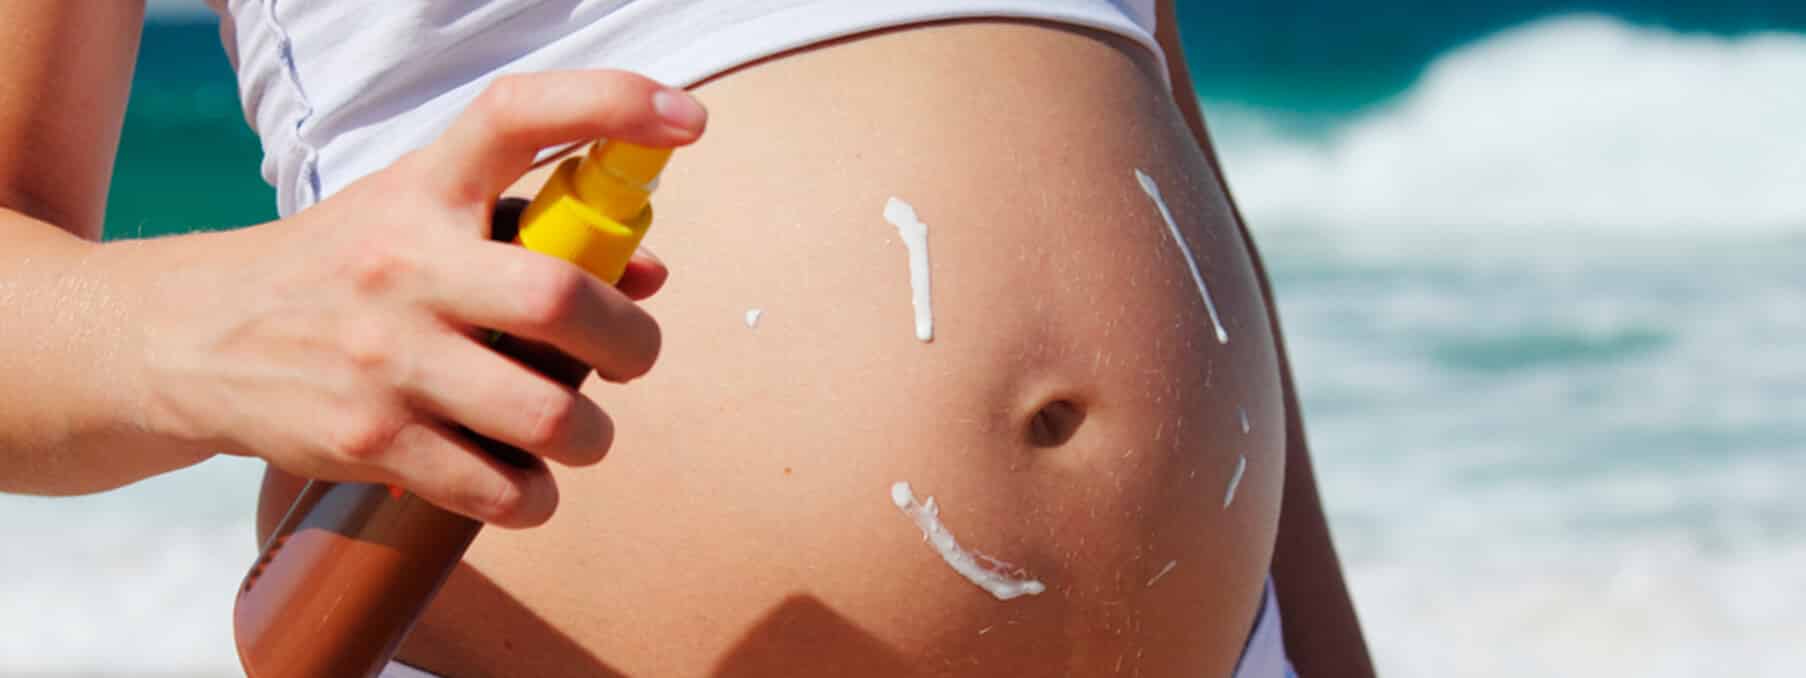 Cuidados com a pele na gravidez - o que fazer e por que é tão importante